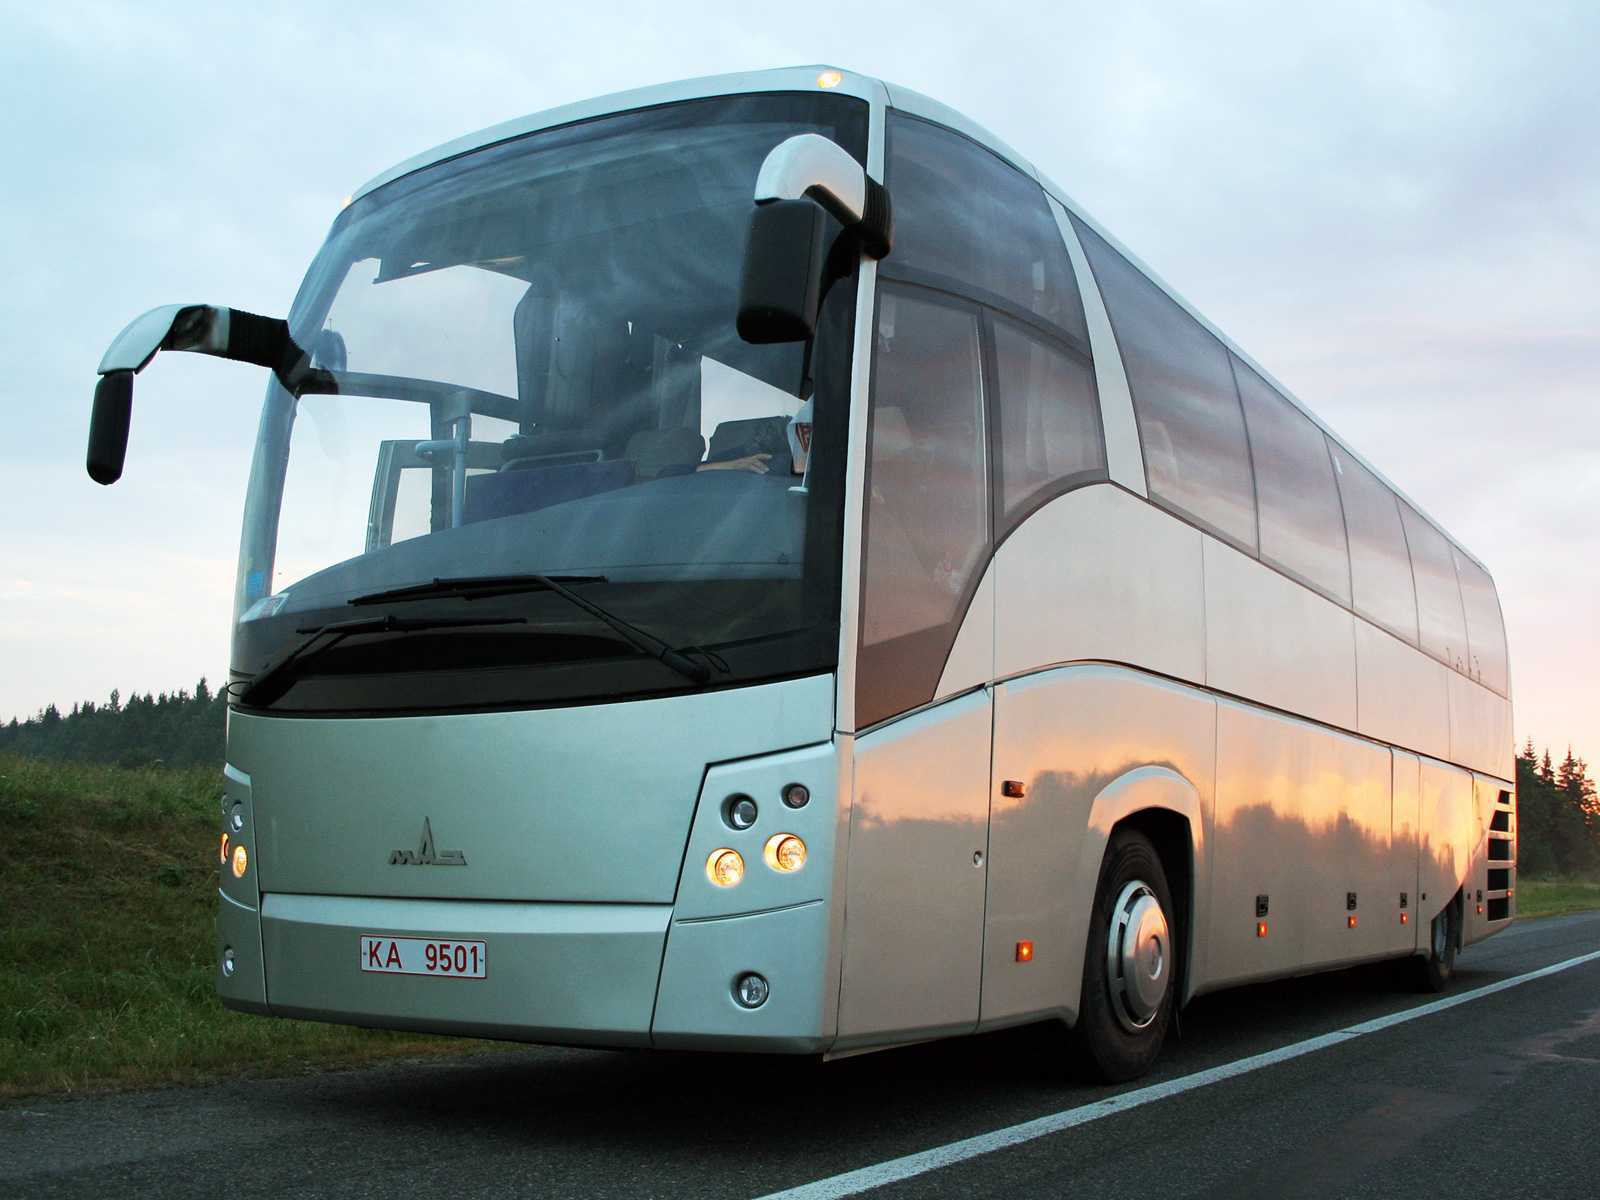 Автобус маз-203: характеристики, фото, низкопольный, городской